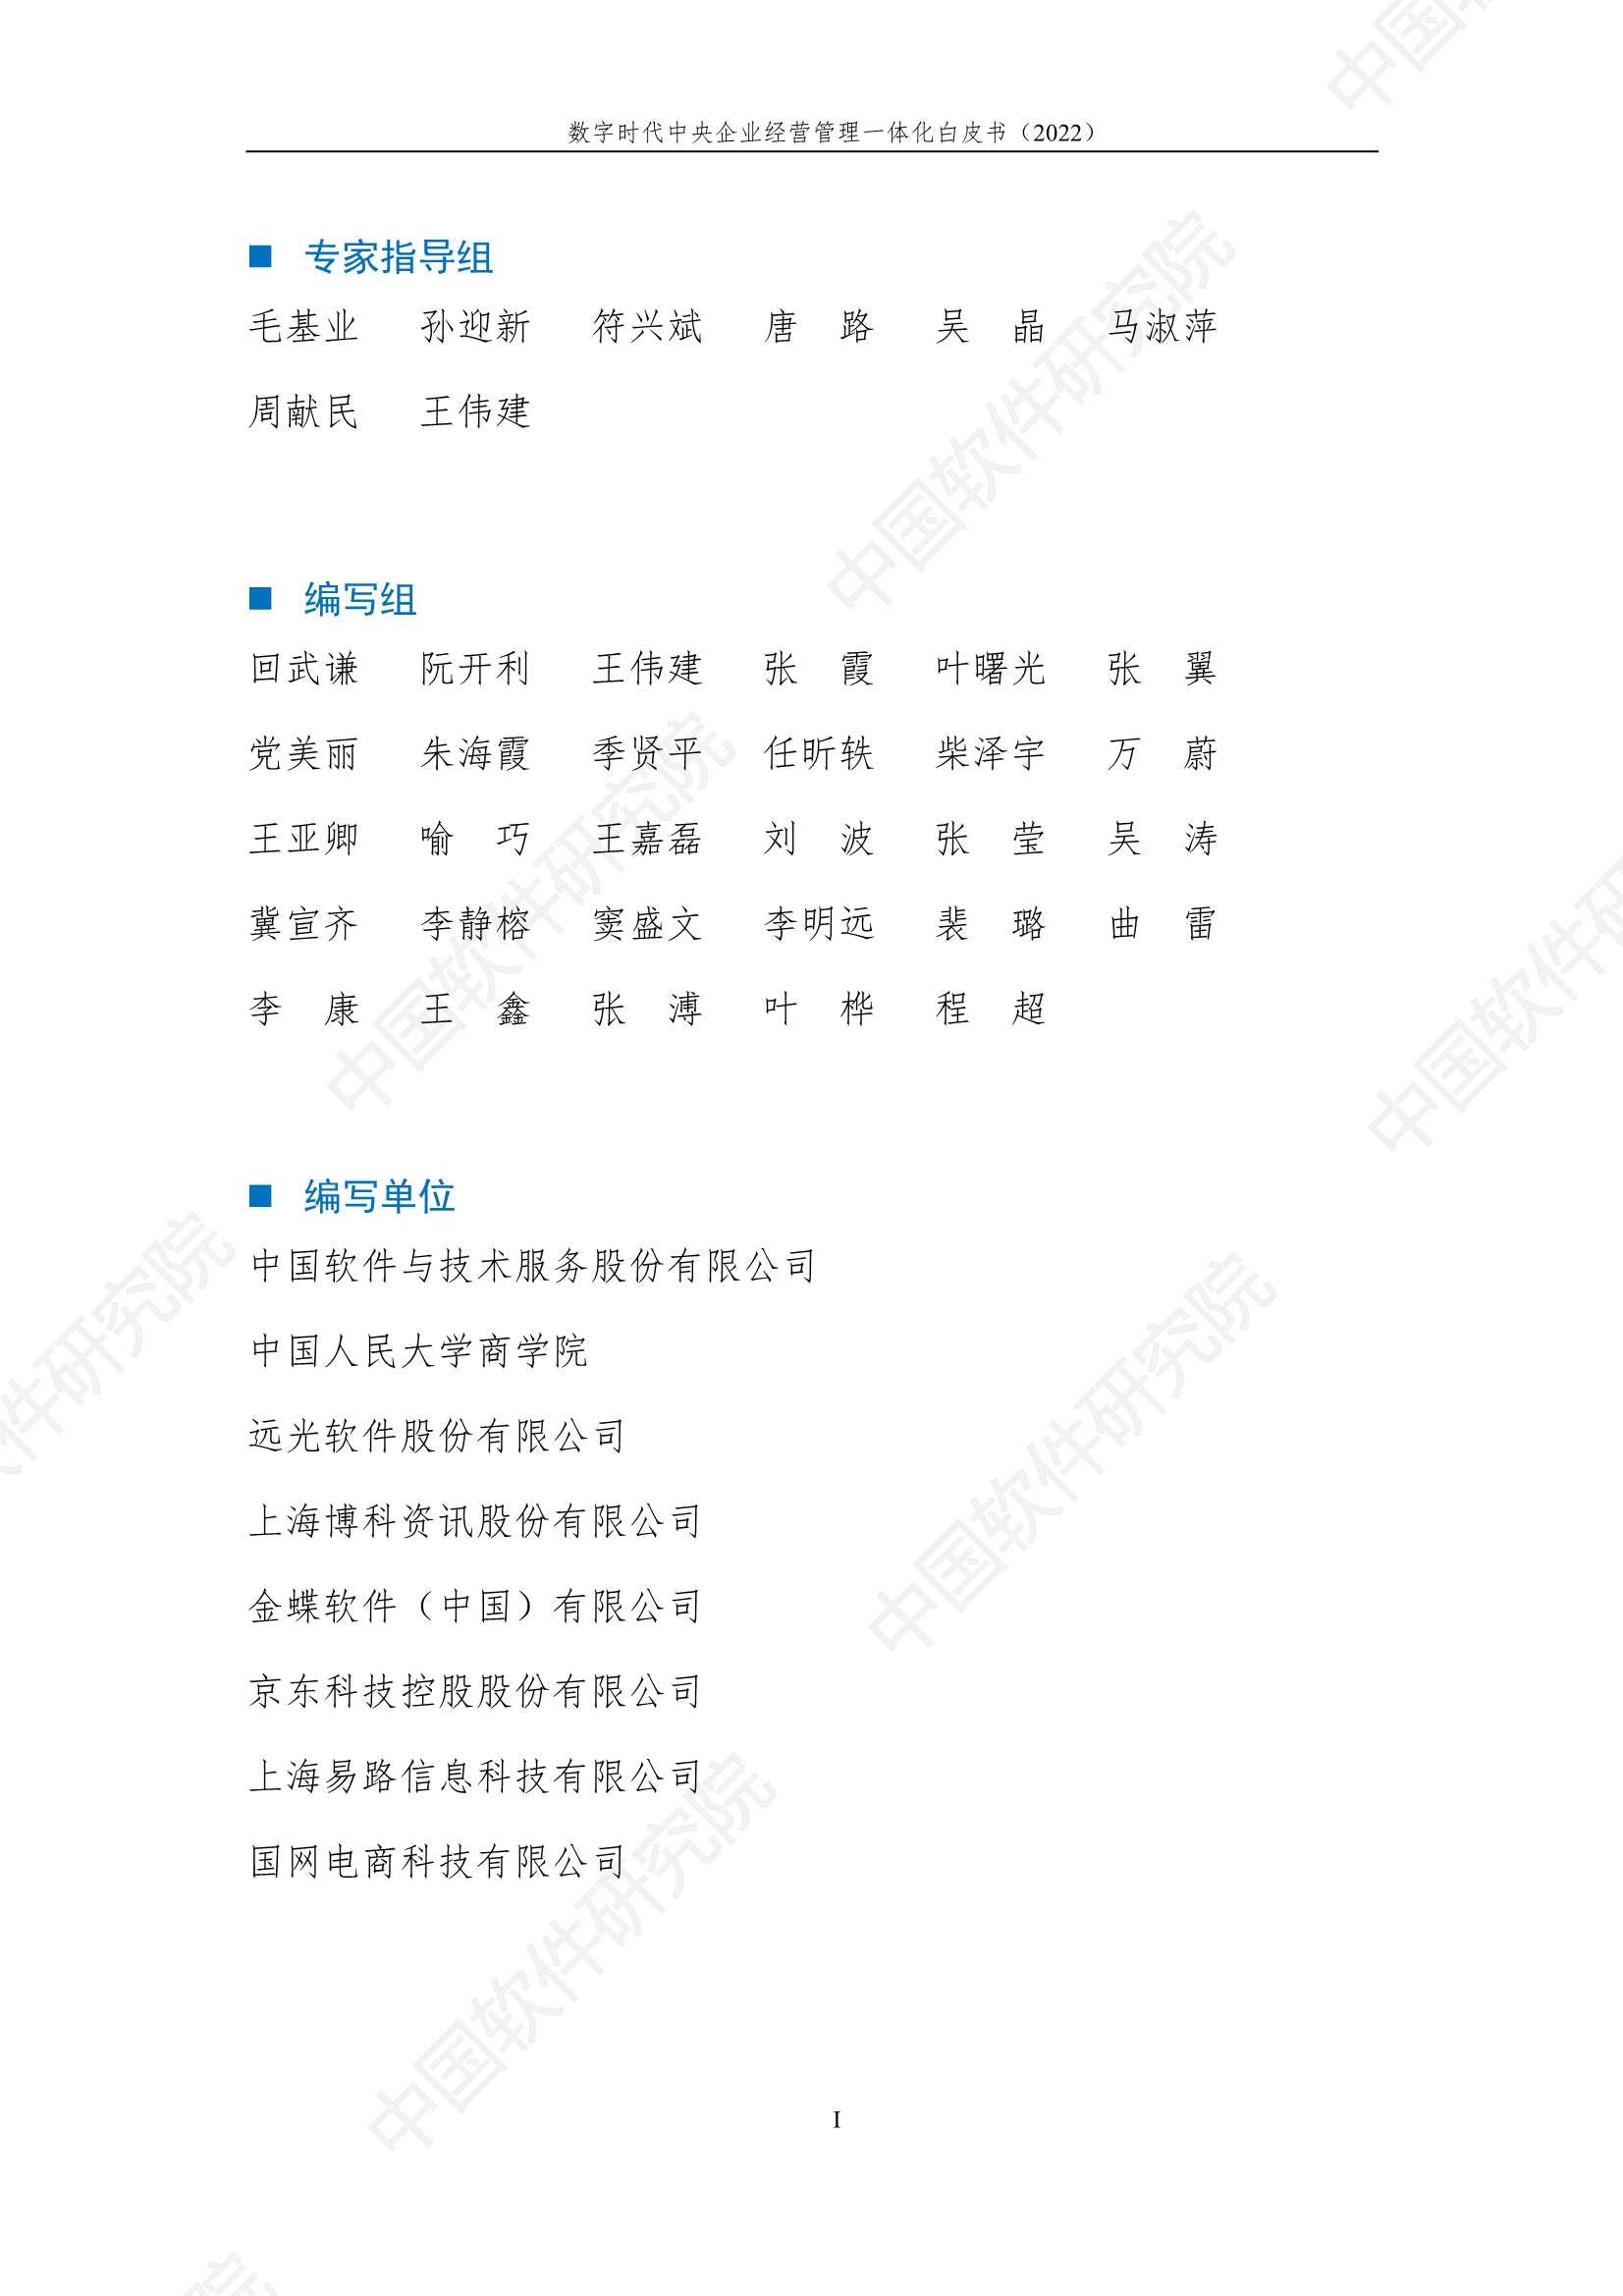 中国电子&中软-数字时代中央企业经营管理一体化白皮书-2021.12-63页